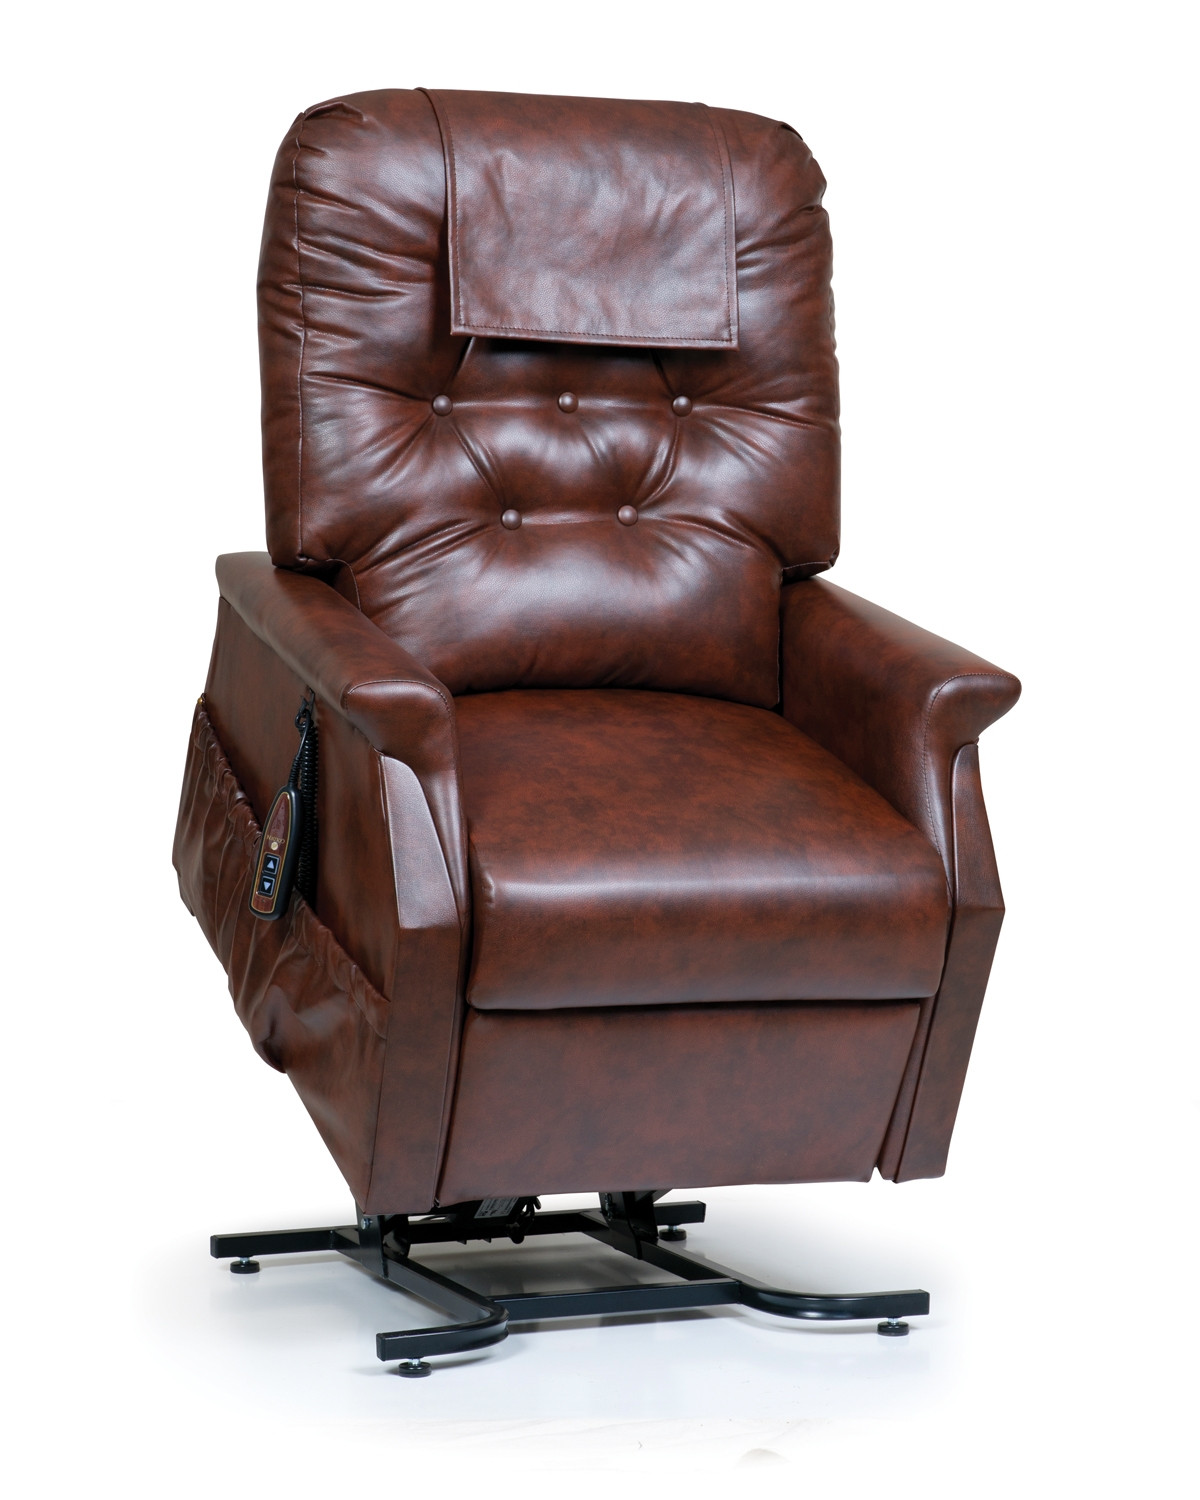 Kraus reclining lift chair recliner by golden tech maxicomfort and Pride Vivar